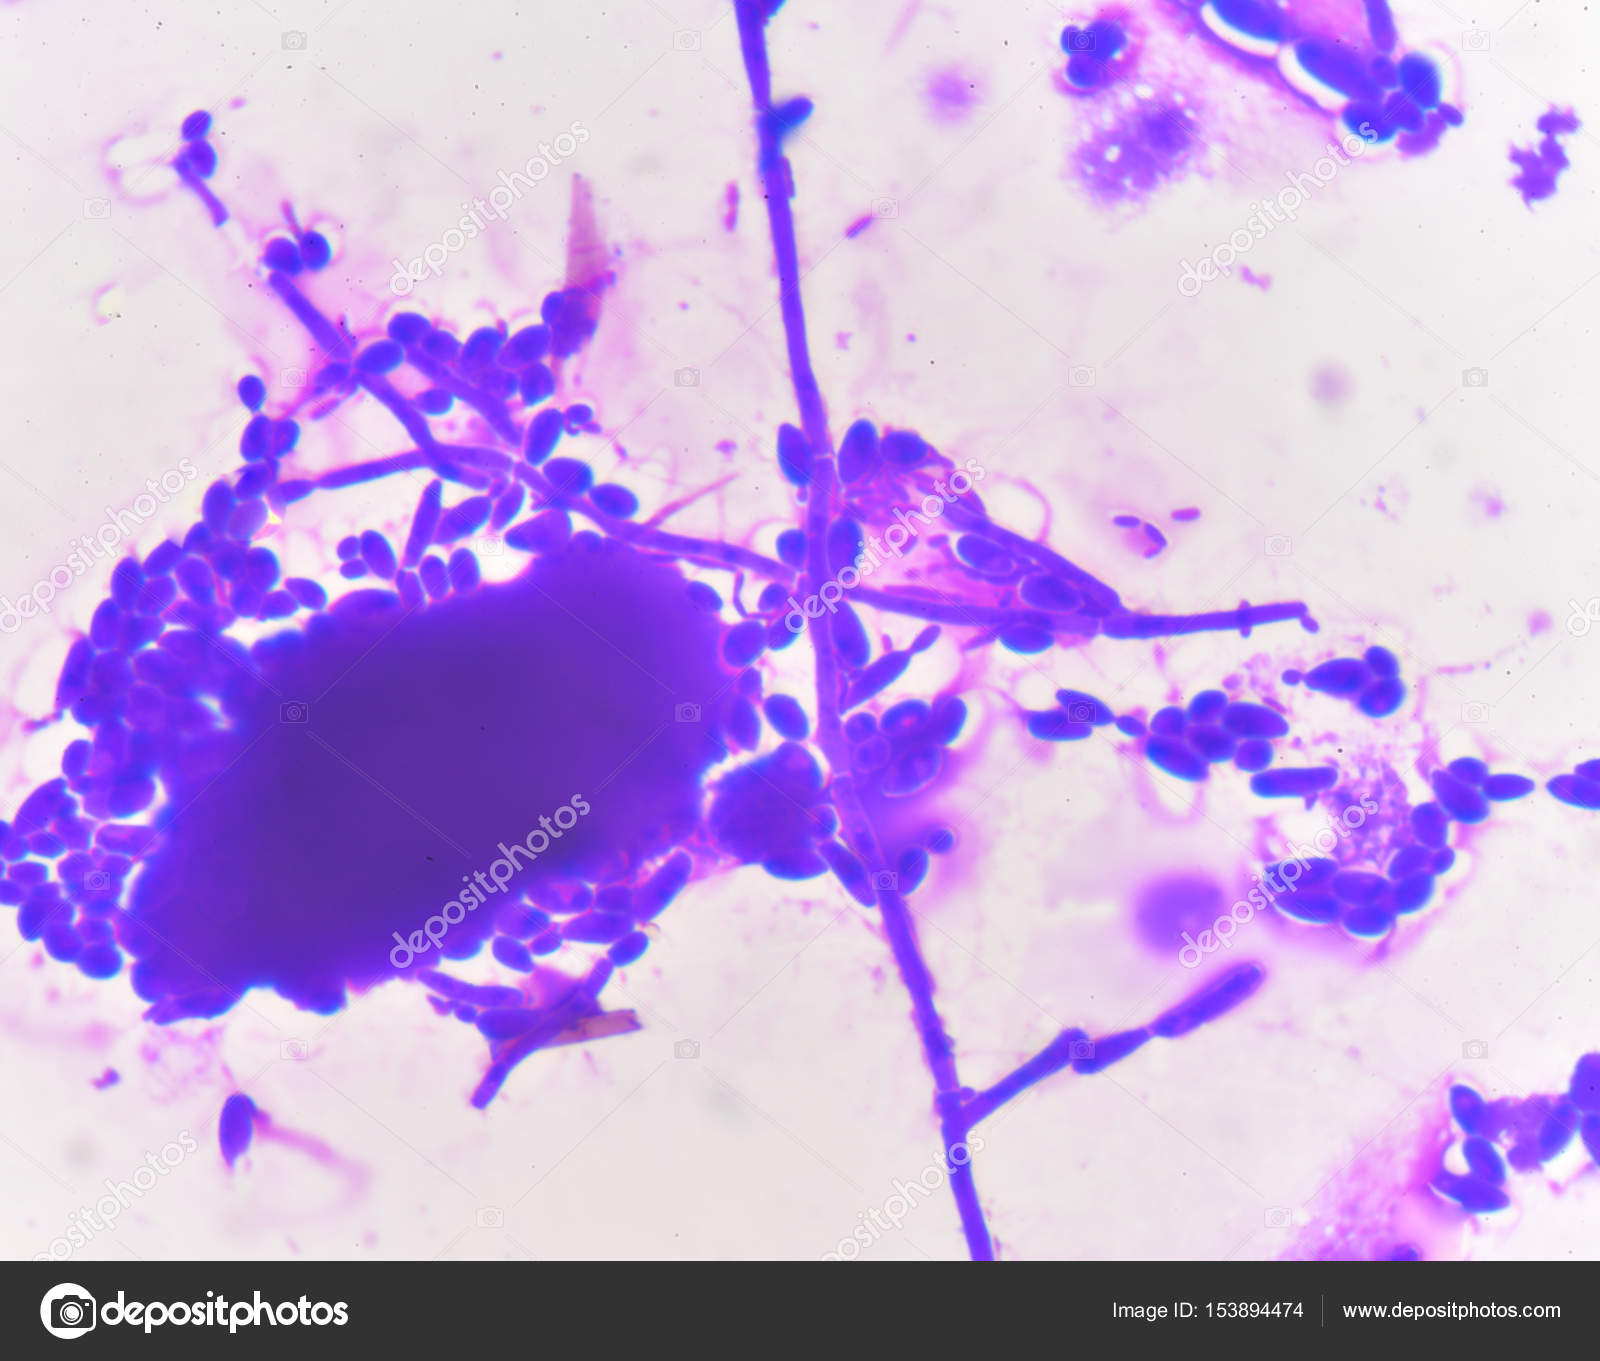 Споры candida. Candida дрожжевые клетки псевдомицелий. Грибы кандида микроскопия. Бластоспоры кандида. Дрожжеподобные грибы: псевдомицелий.